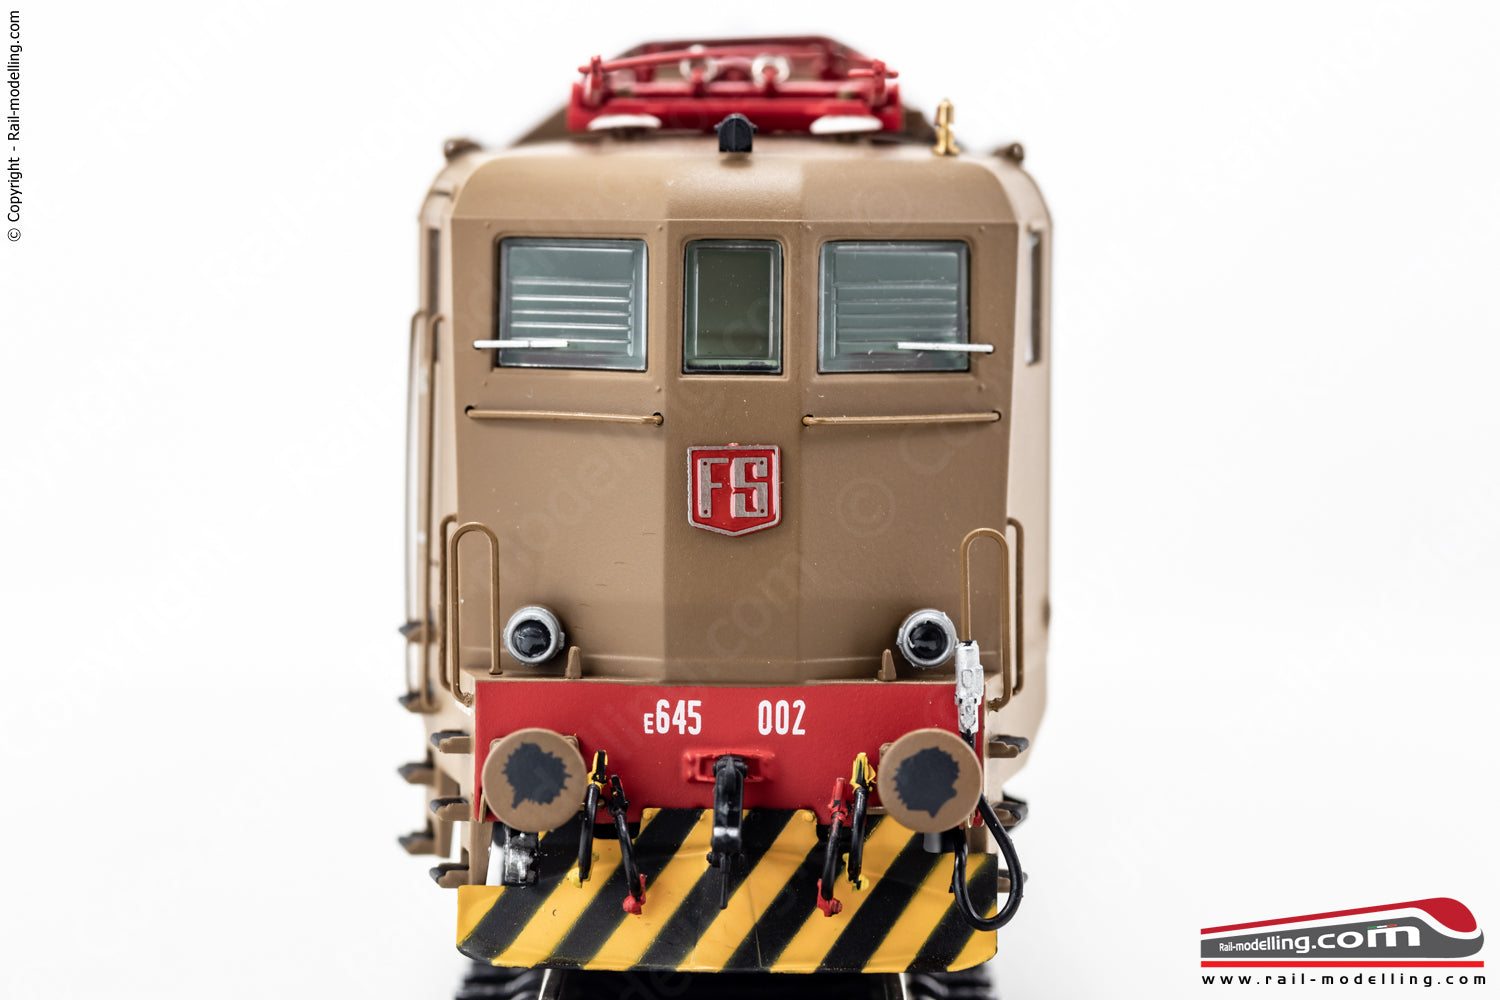 ACME 60488 - H0 1:87 - Locomotiva elettrica FS E.645 002 livrea isabella Ep. V